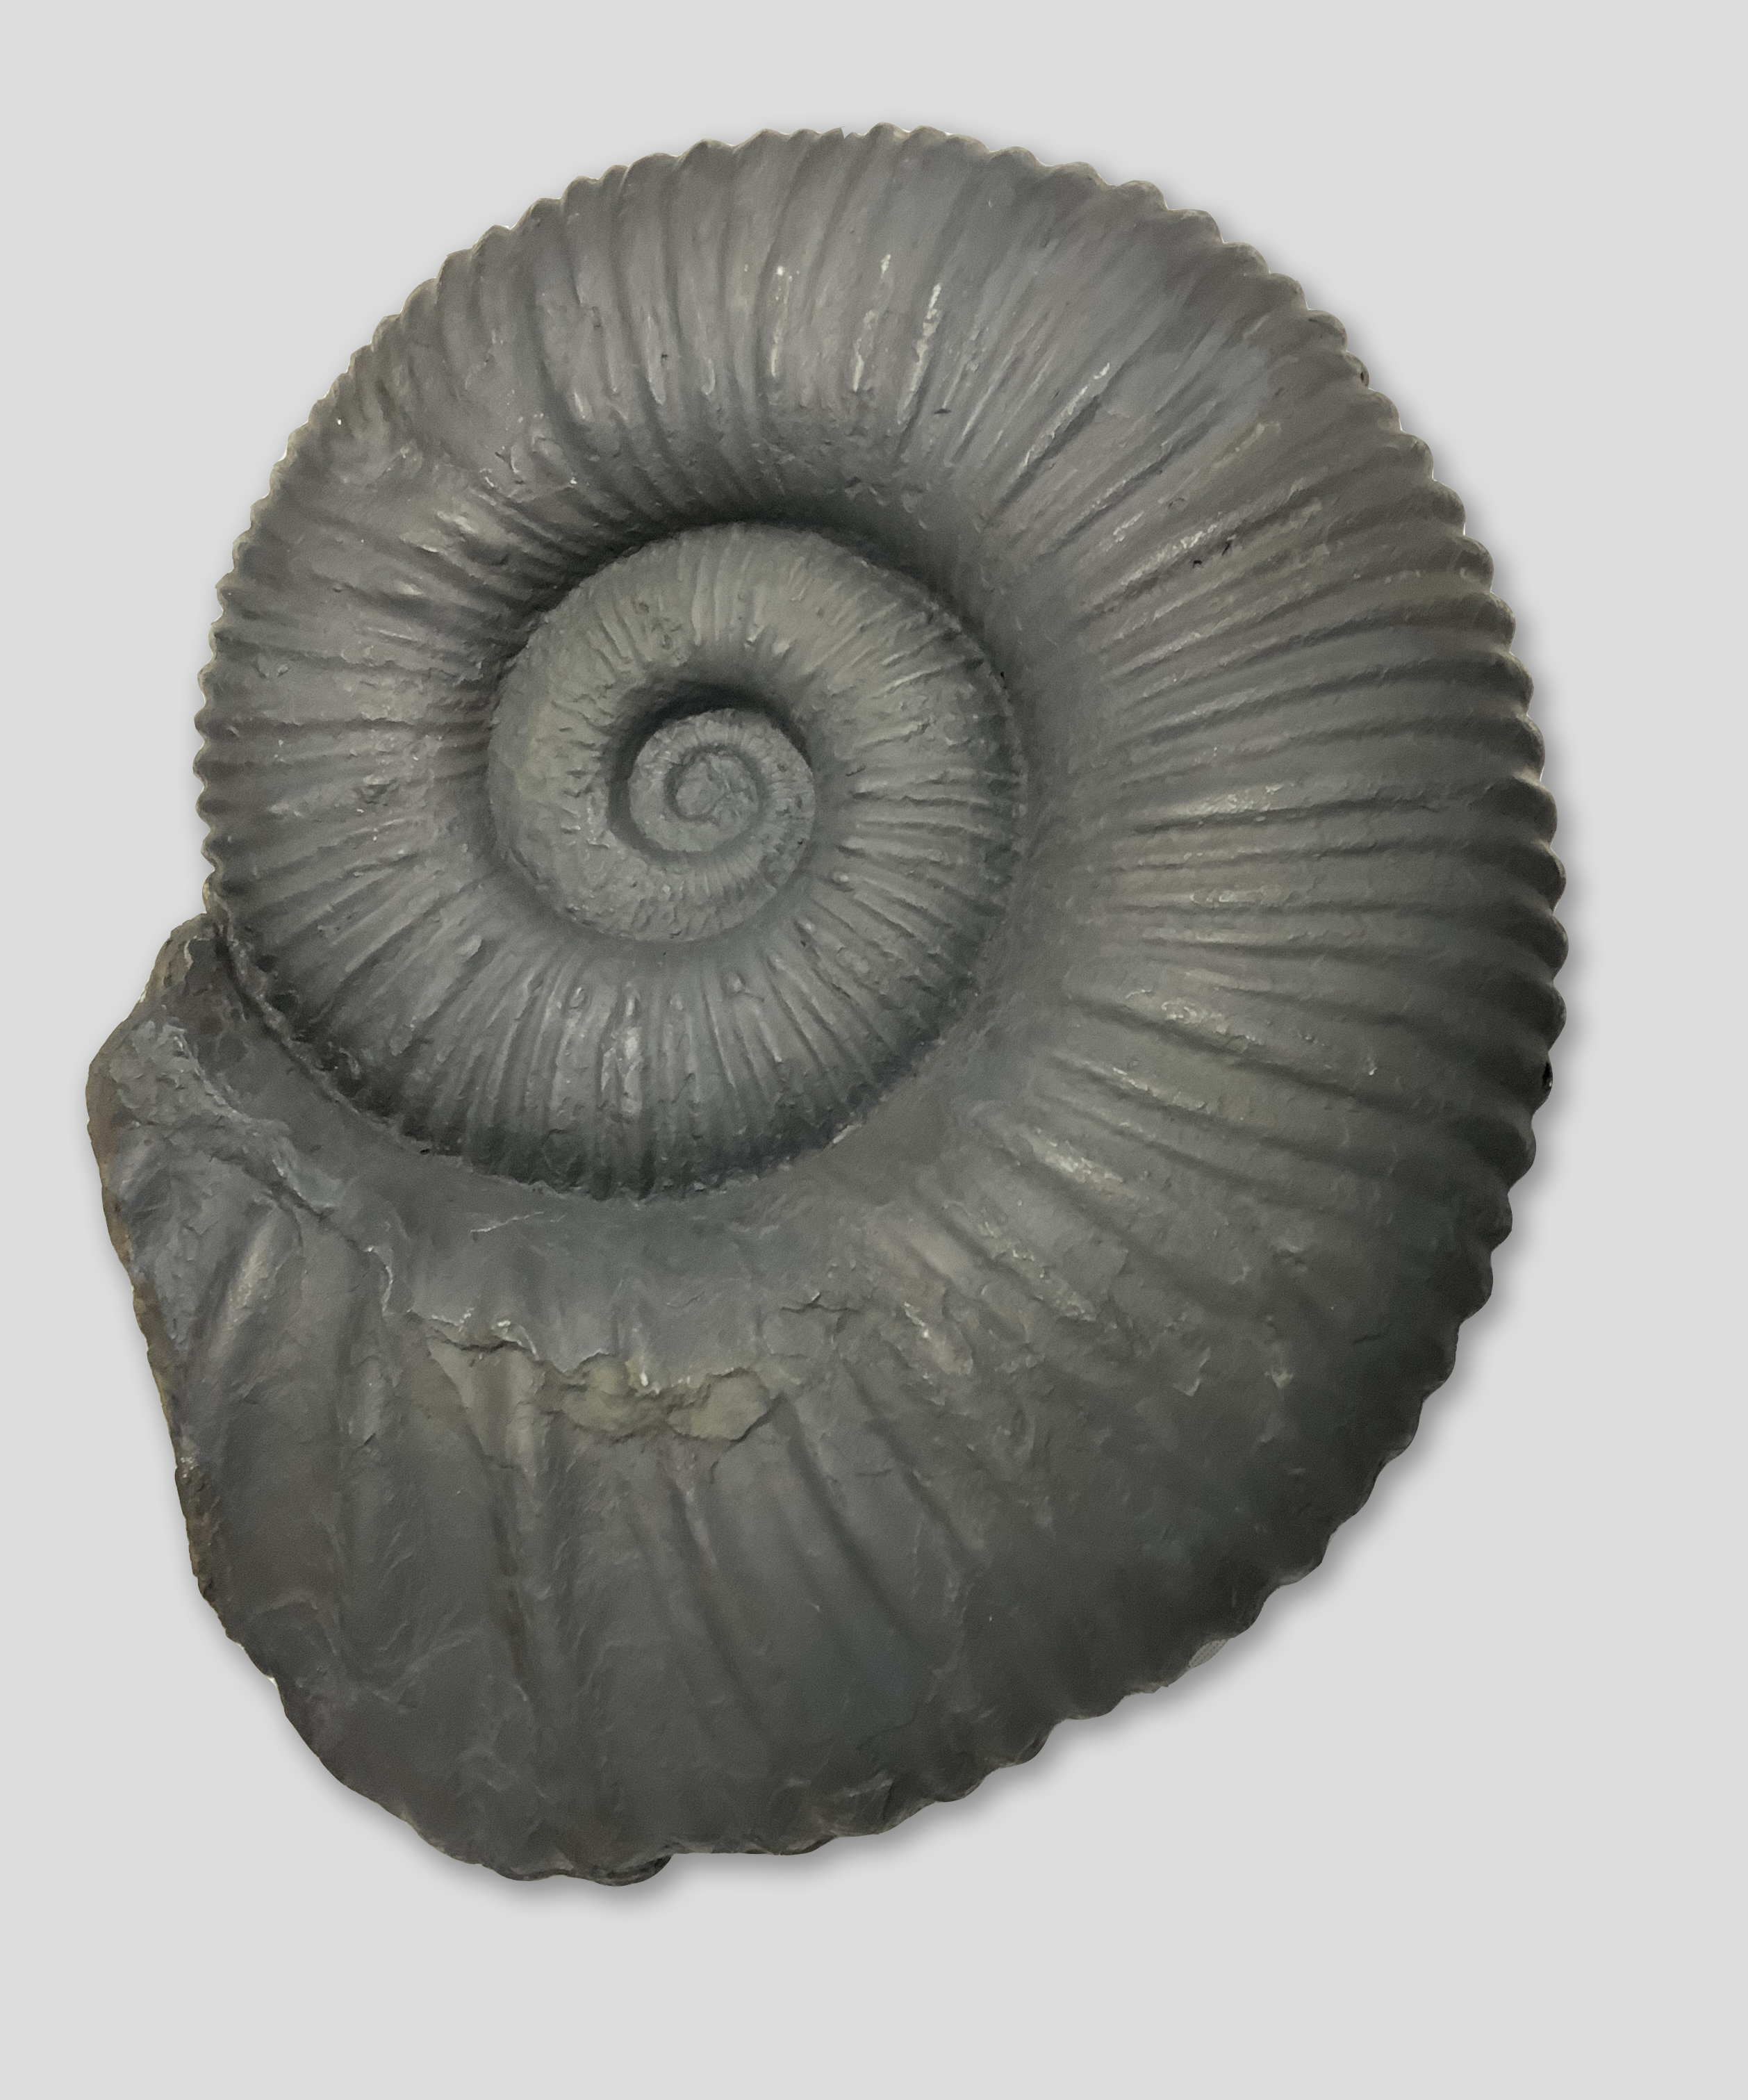 Ammonitoceras giganteum